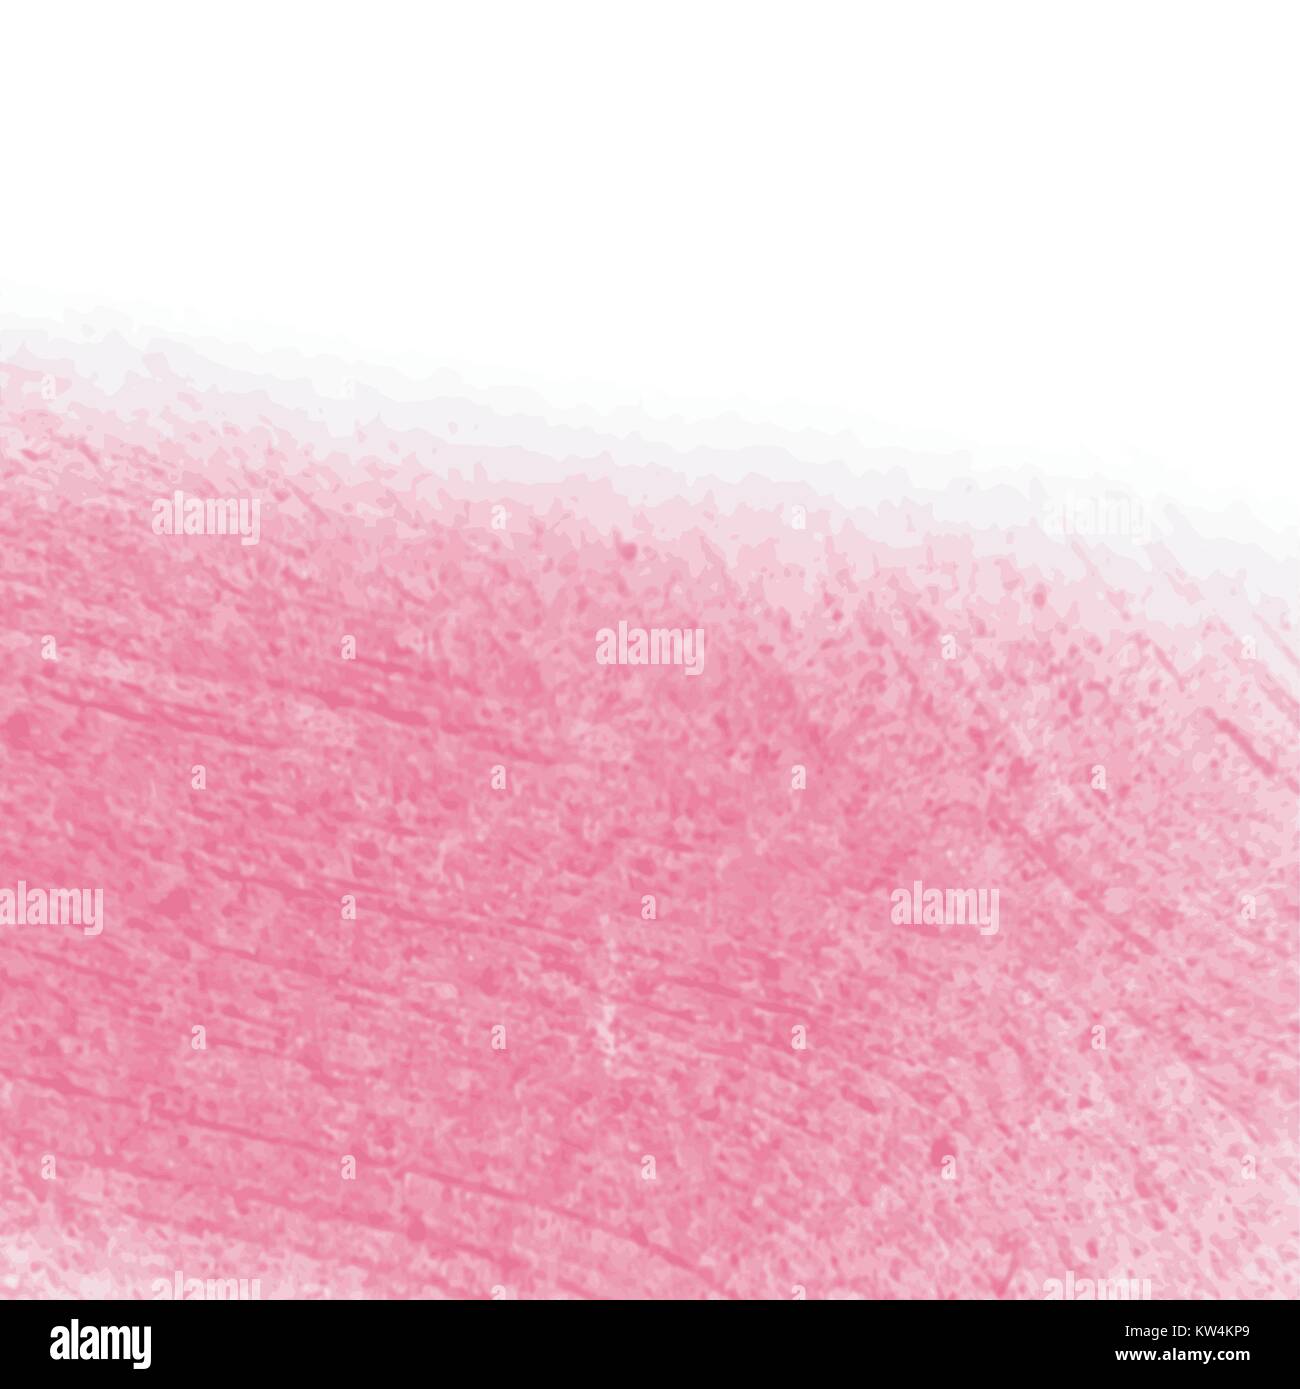 Hot Pink aquarell Struktur Muster, Vector Illustration Stock Vektor